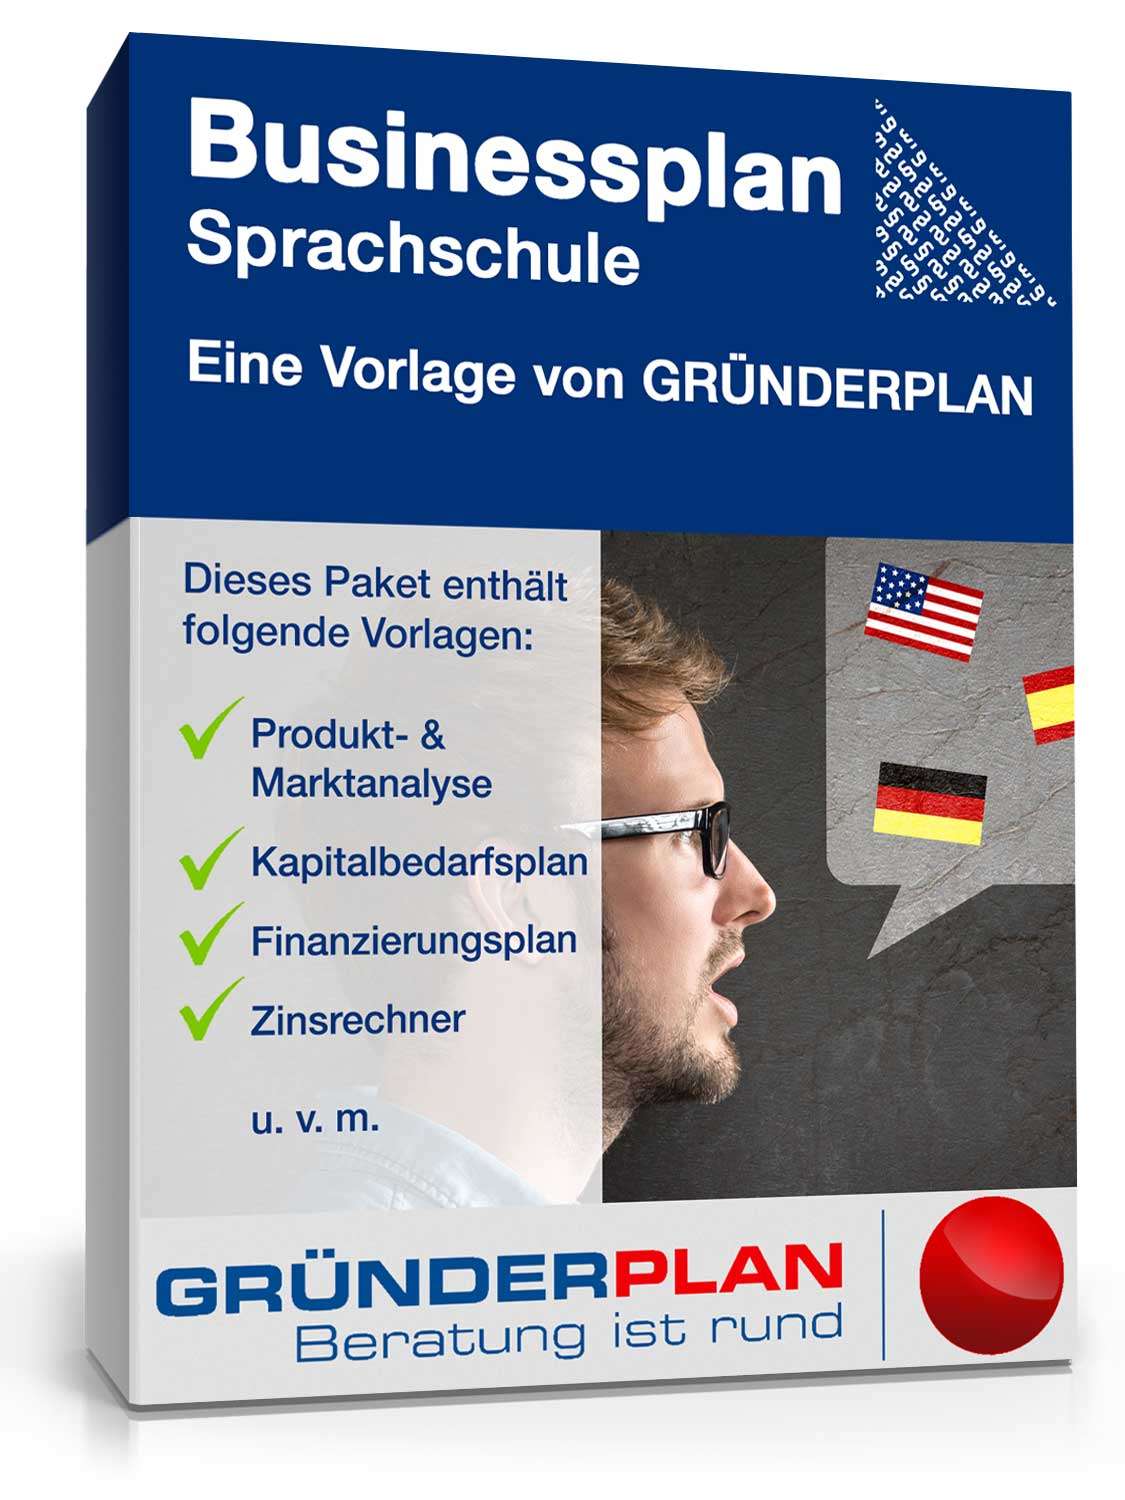 Hauptbild des Produkts: Businessplan Sprachschule von Gründerplan